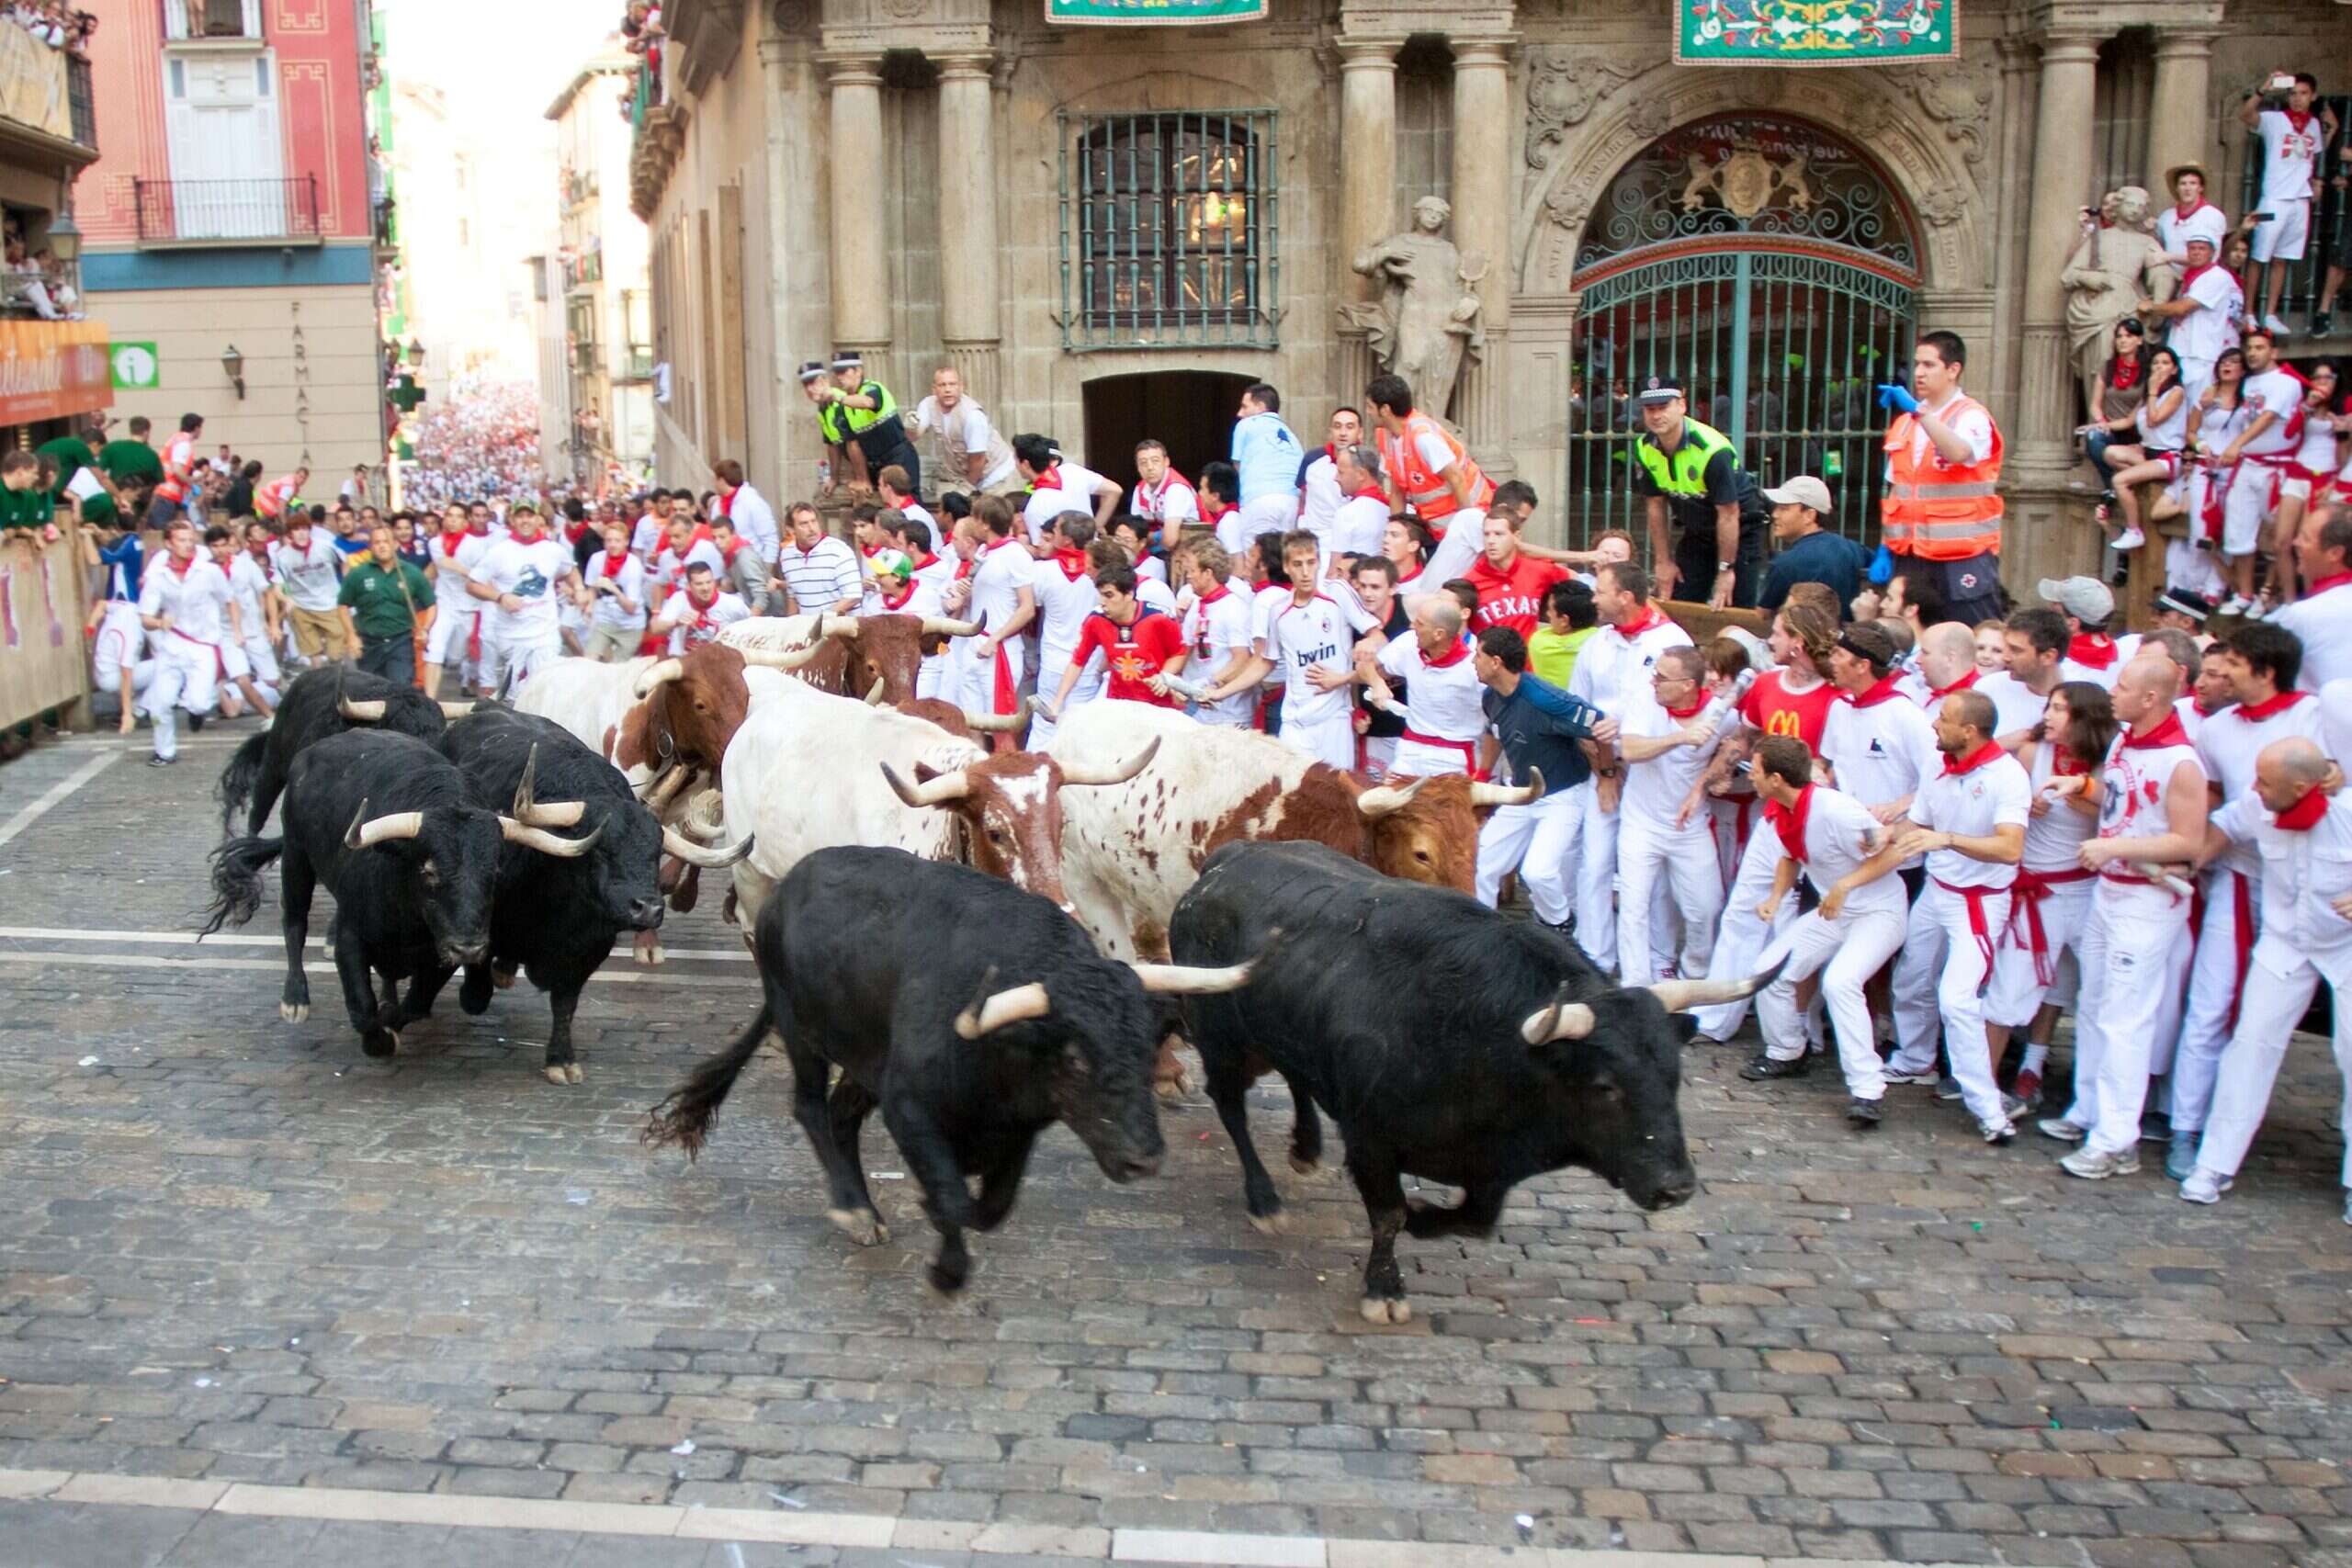 Running of the Bulls festival in Spain